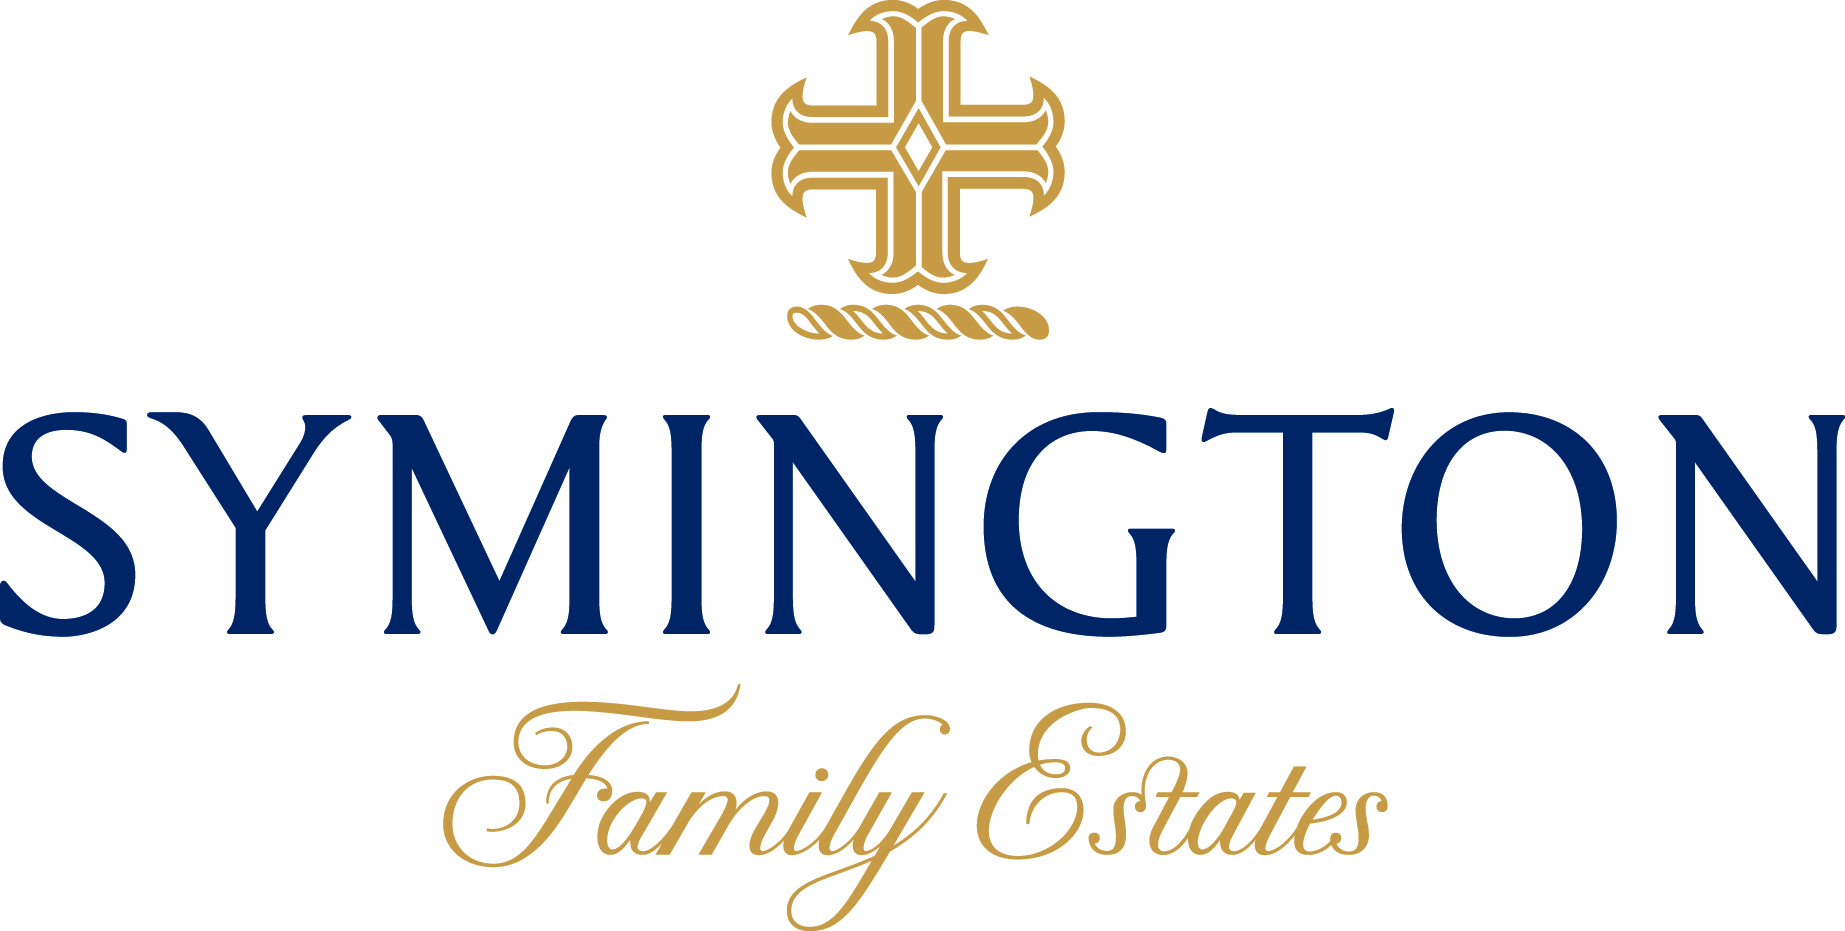 Symington Family Estates